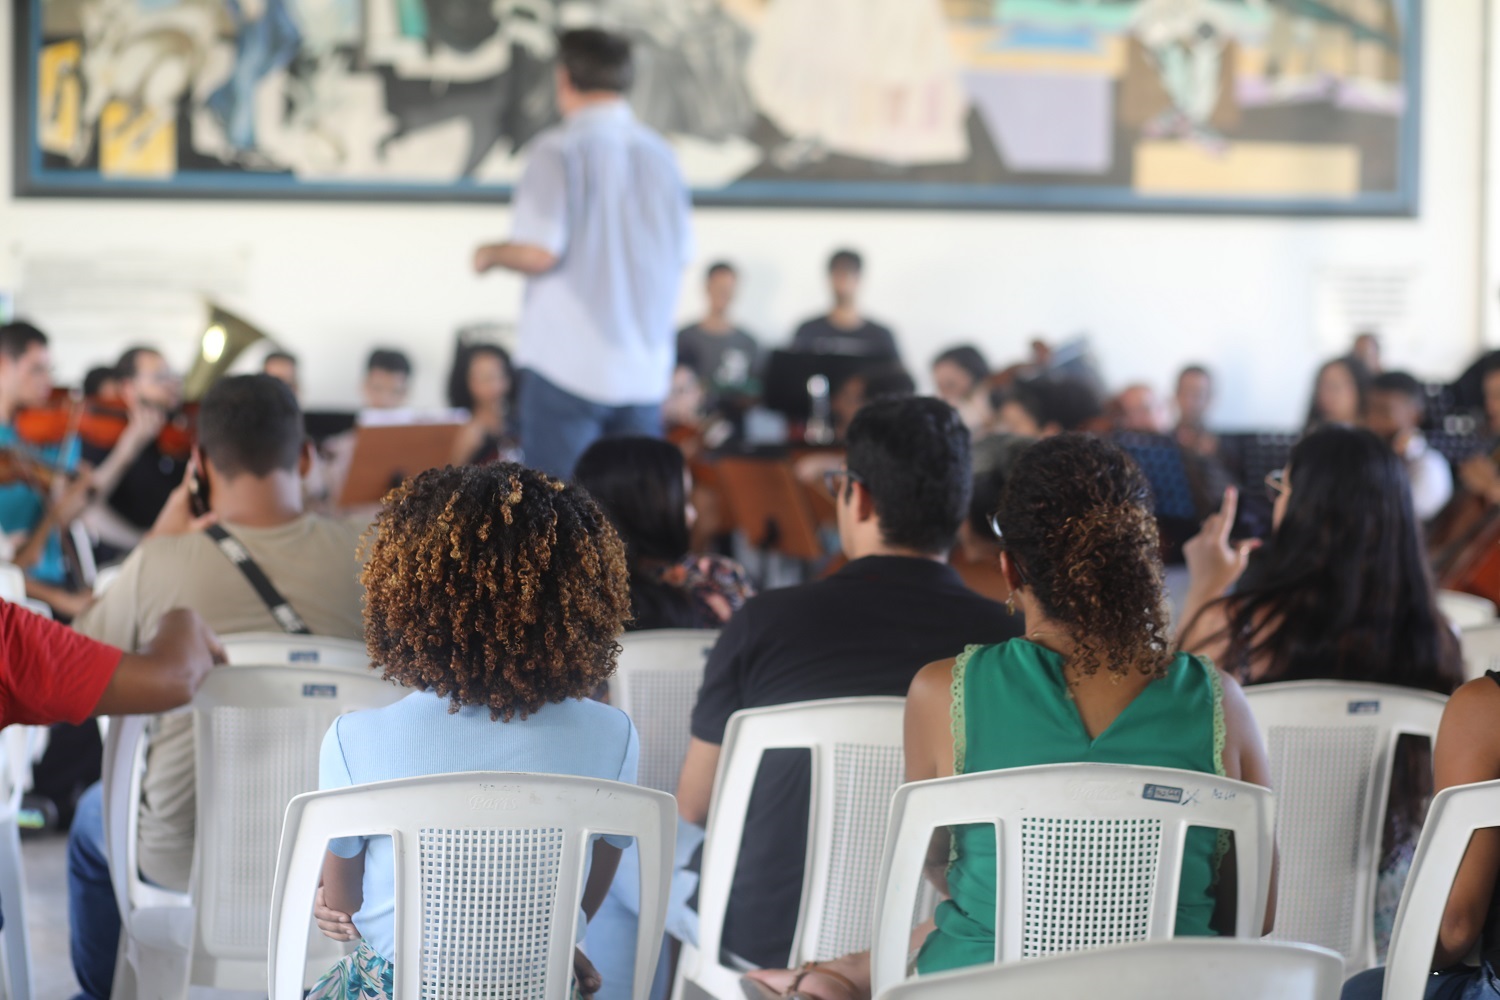 Encontro aconteceu no hall da Reitoria, no Campus de São Cristóvão. (foto: Janaína Cavalcante/Ascom UFS)